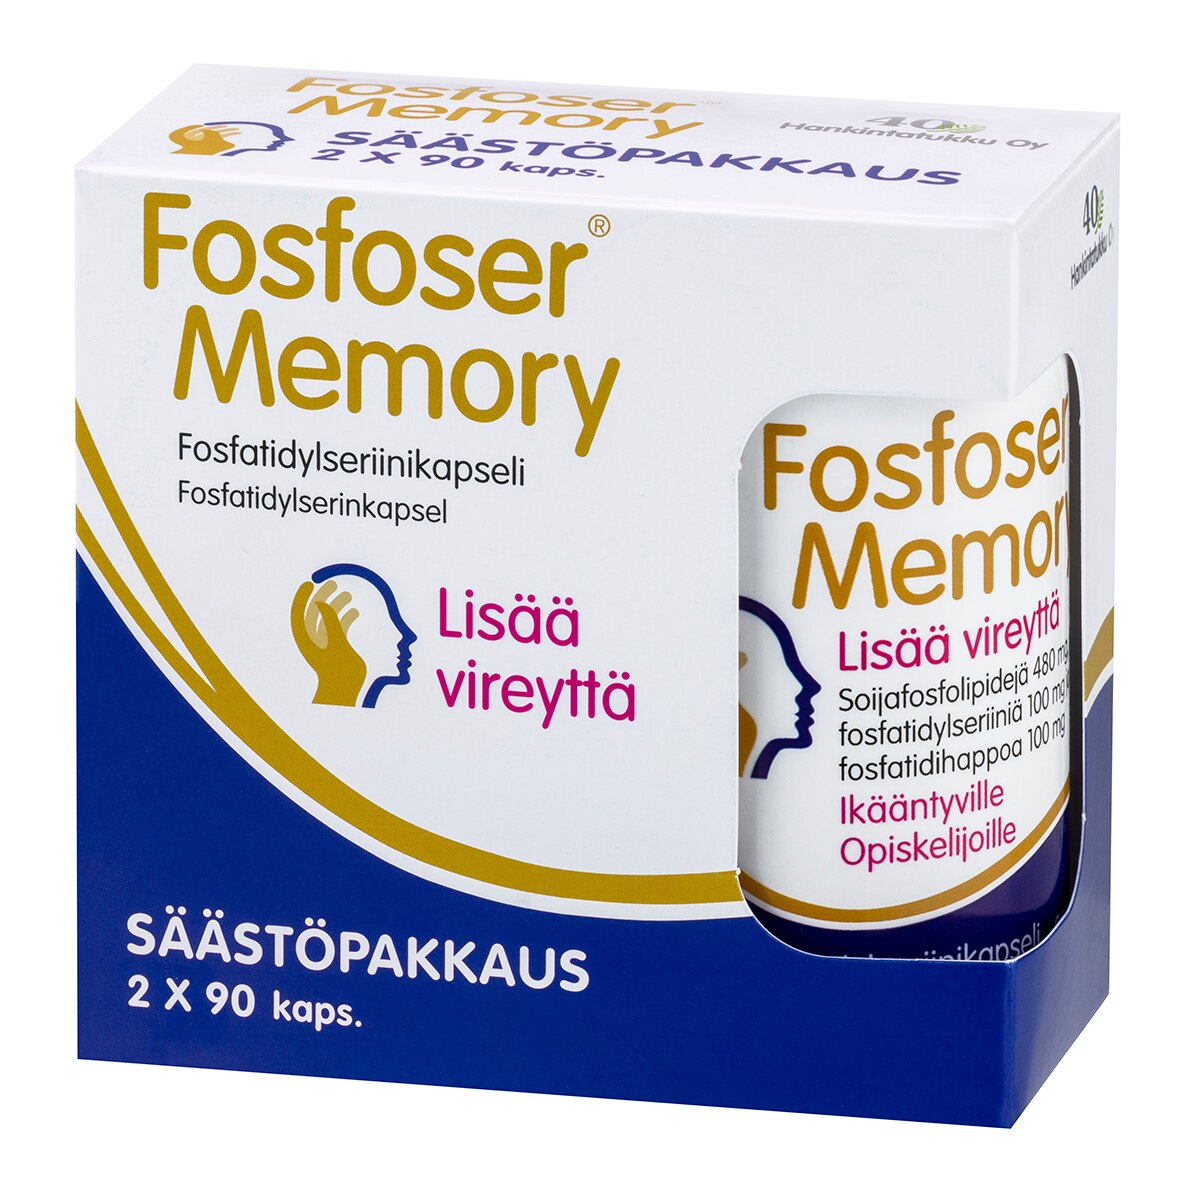 Fosfoser Memory Tuplapakkaus 2 x 90 kaps